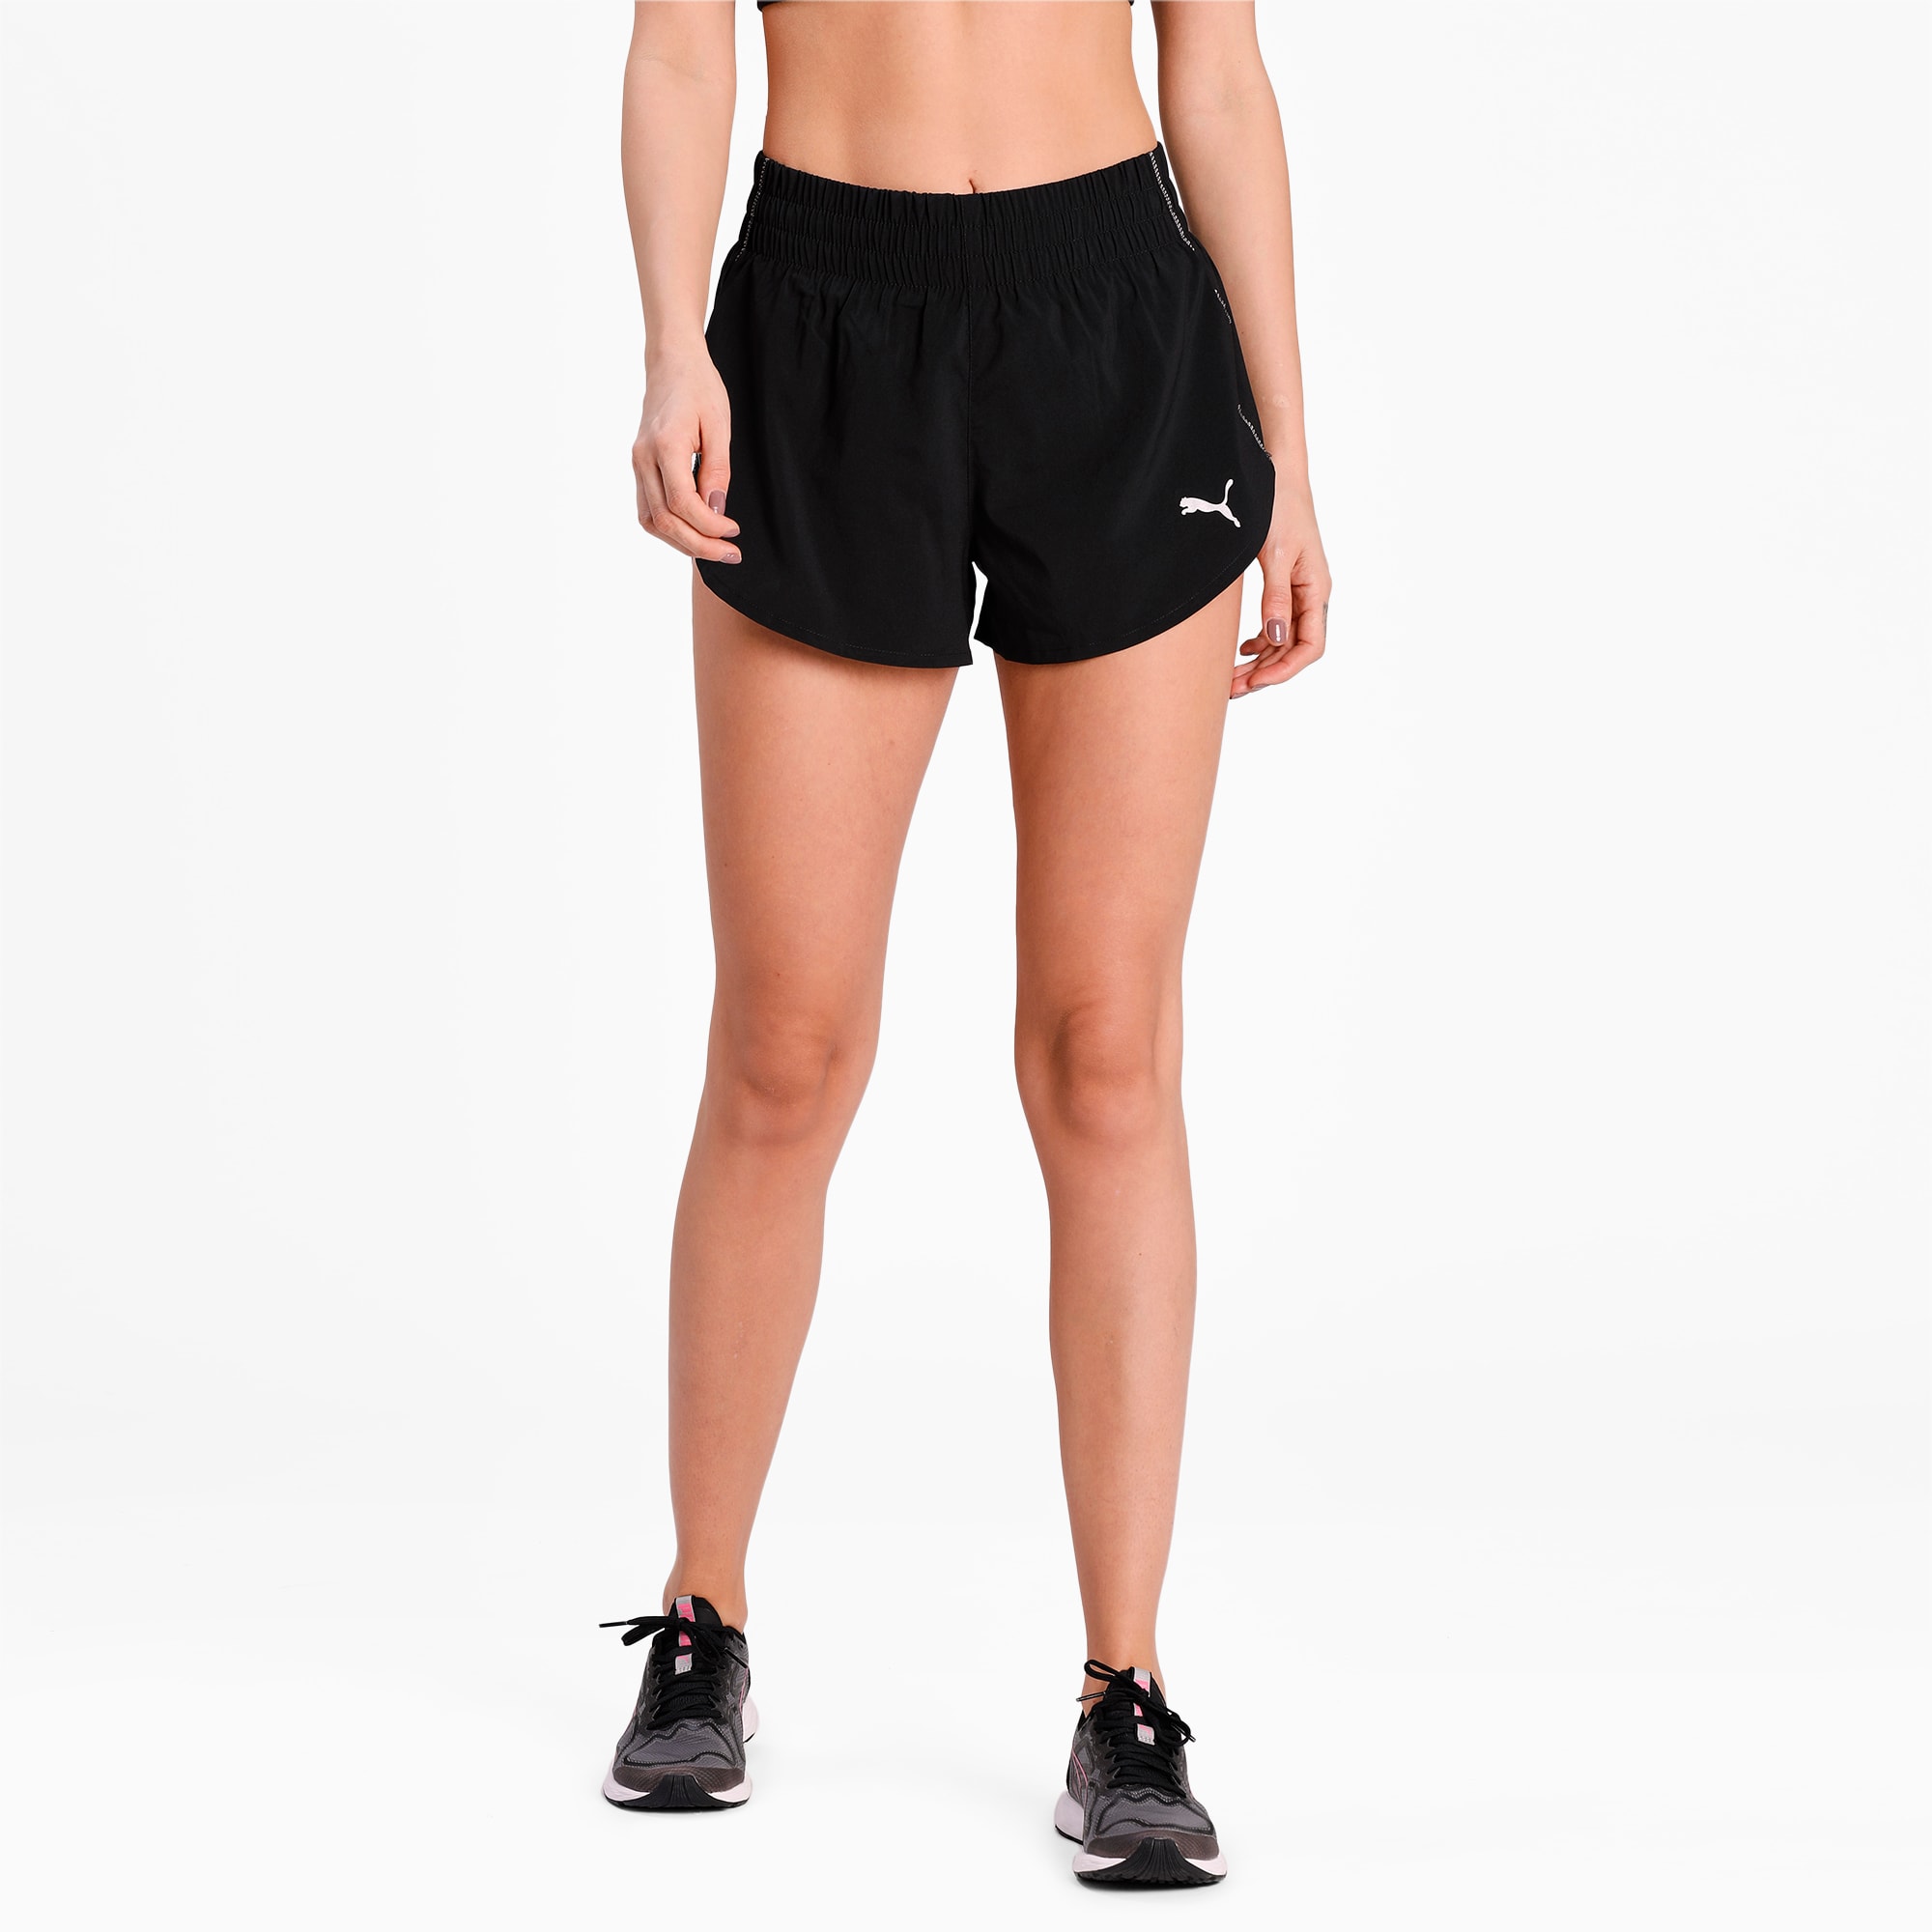 puma workout shorts